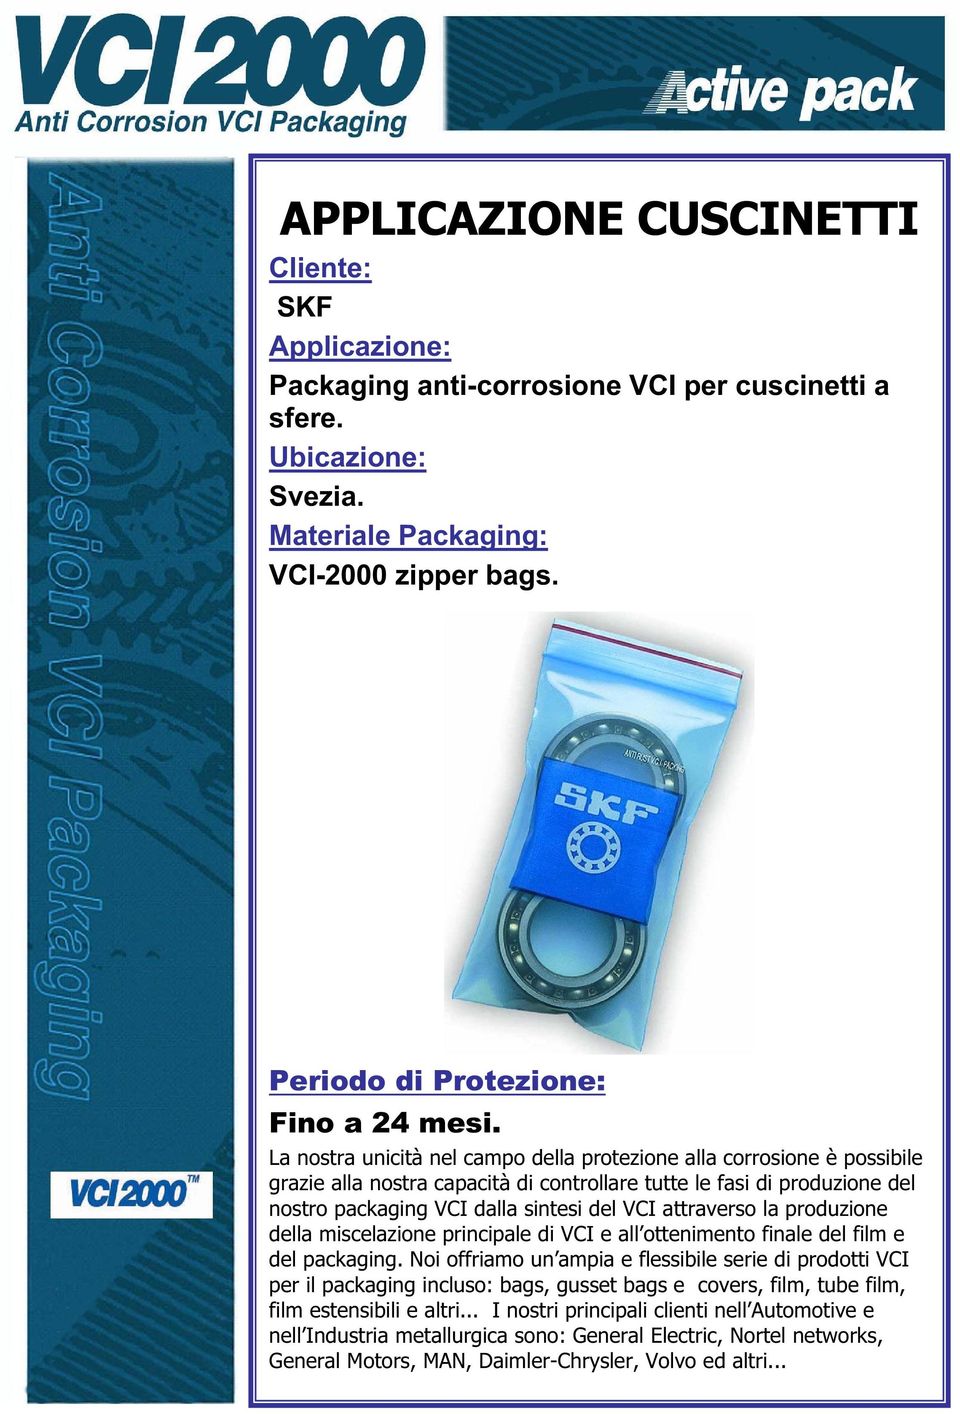 nostro packaging VCI dalla sintesi del VCI attraverso la produzione della miscelazione principale di VCI e all